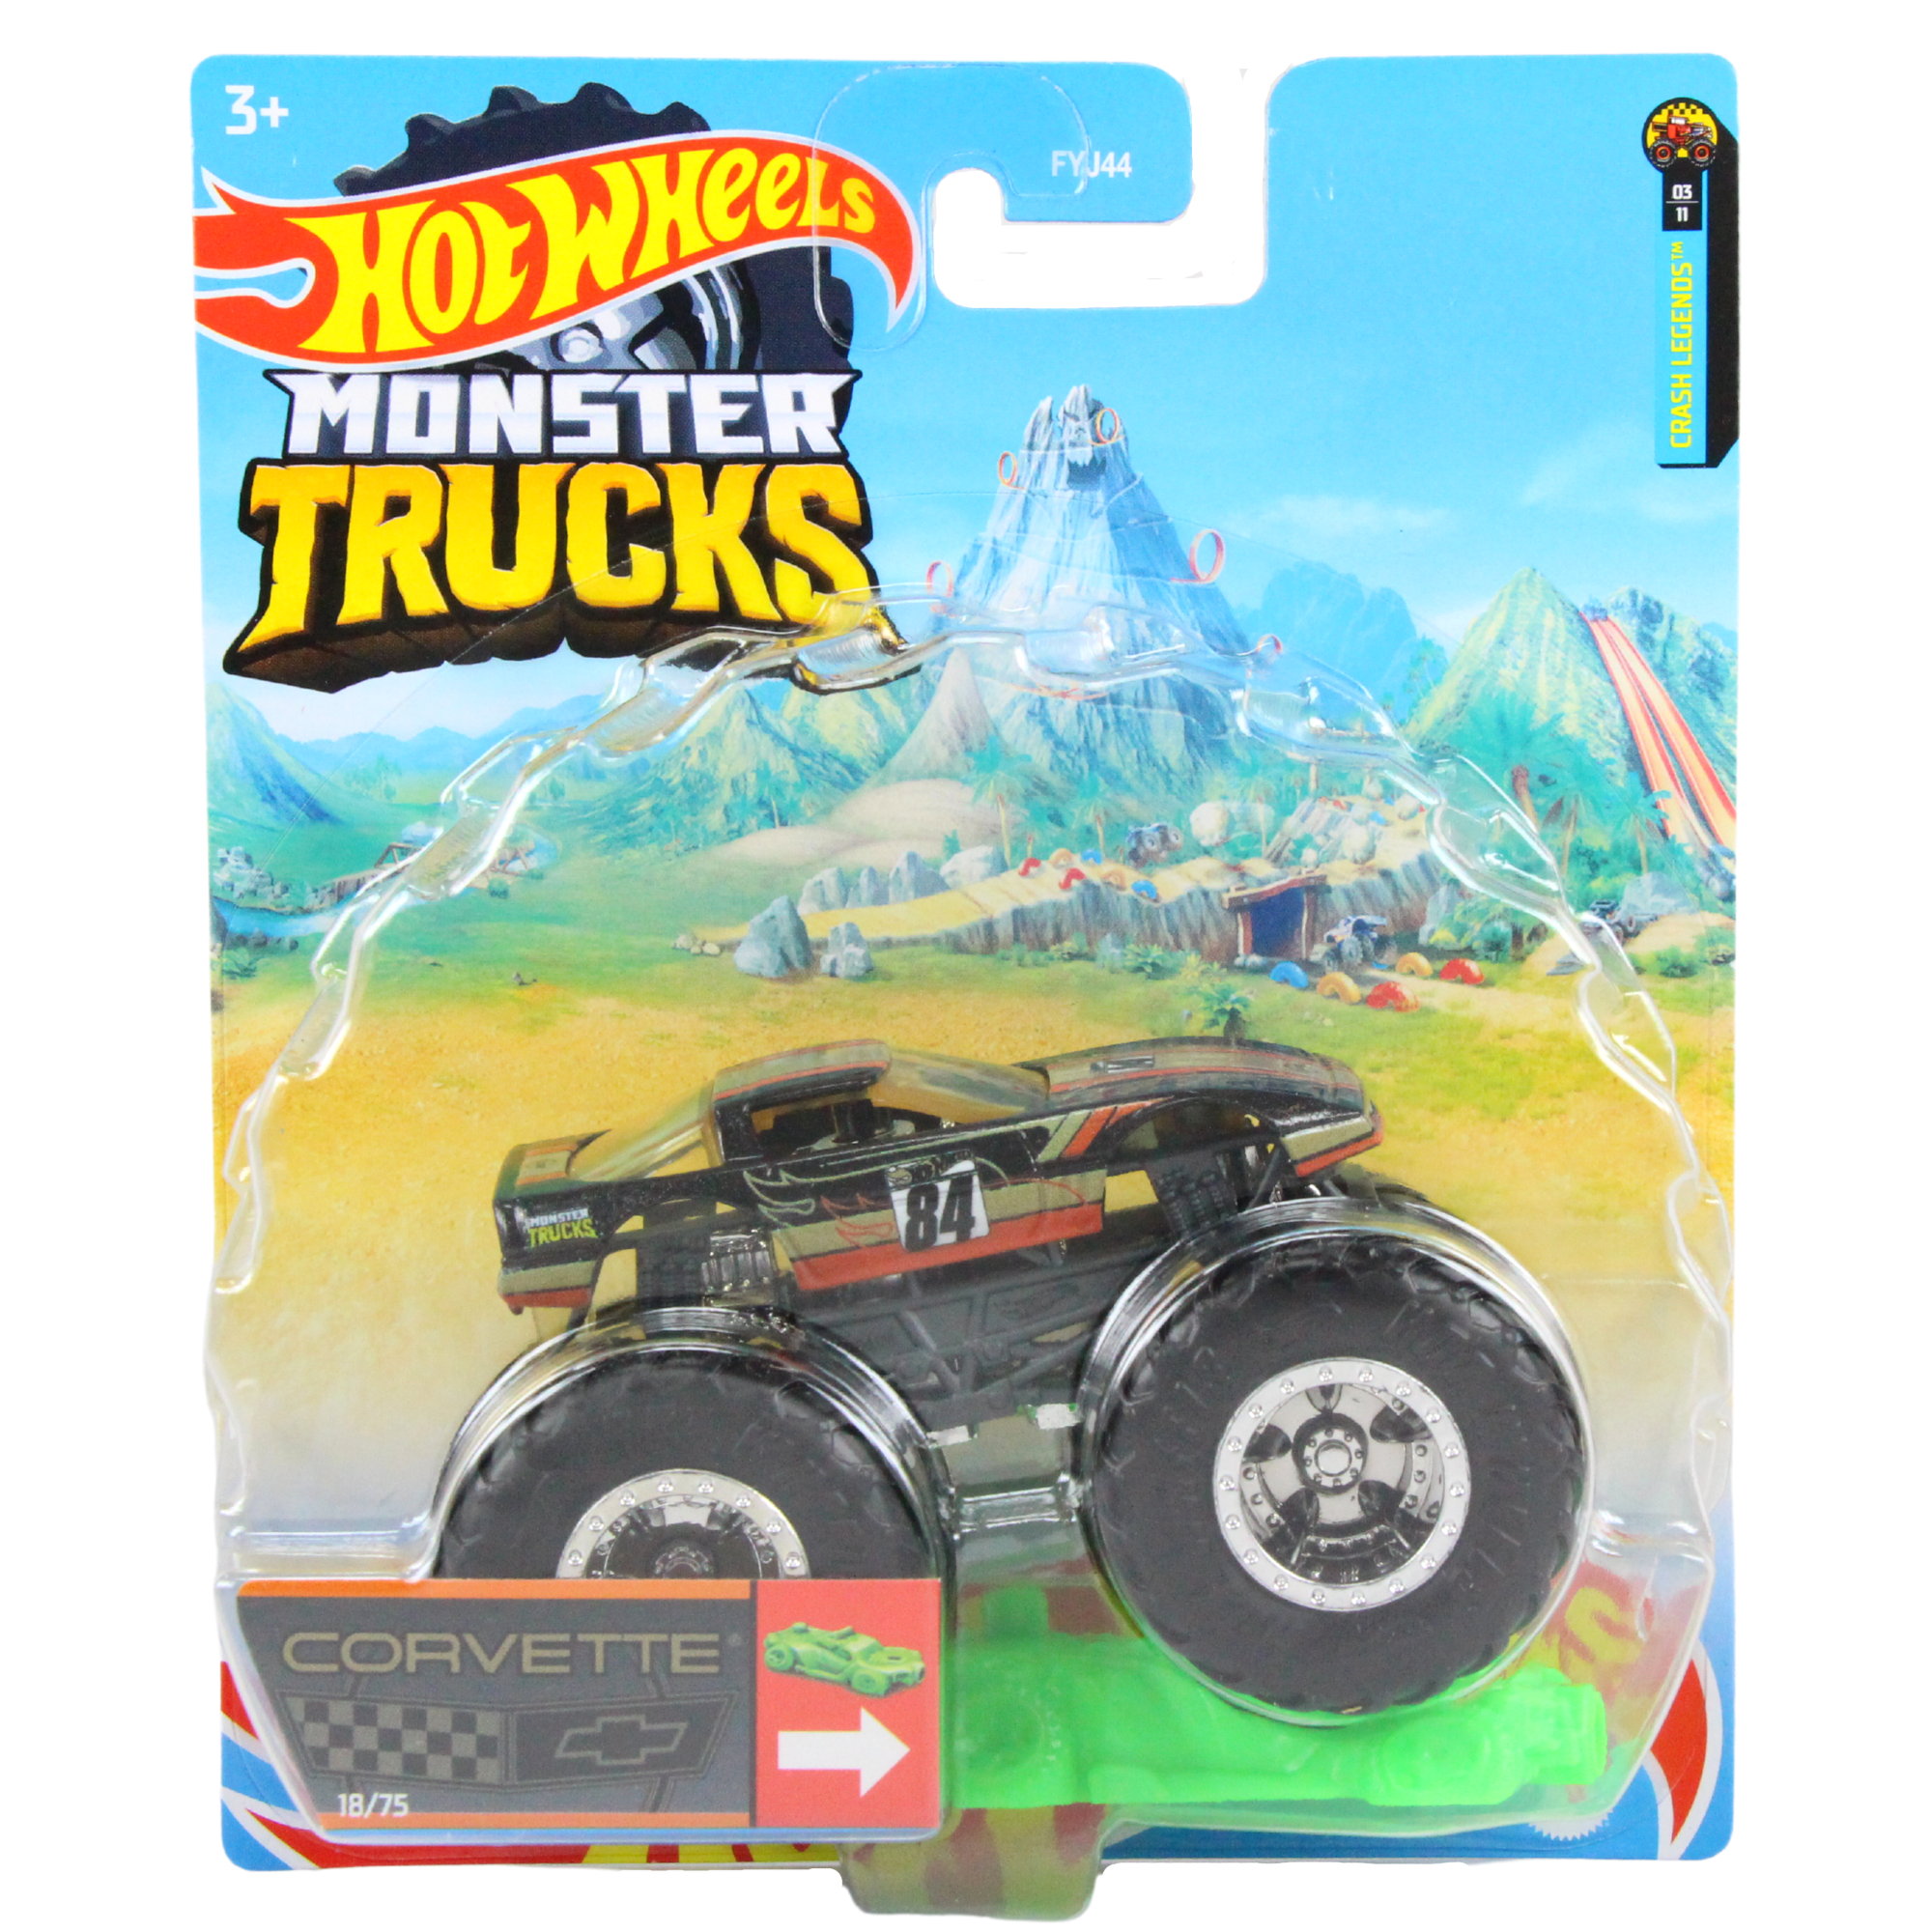 Hot Wheels Monster Trucks - Corvette 1:64 Diecast - Toptoys2u